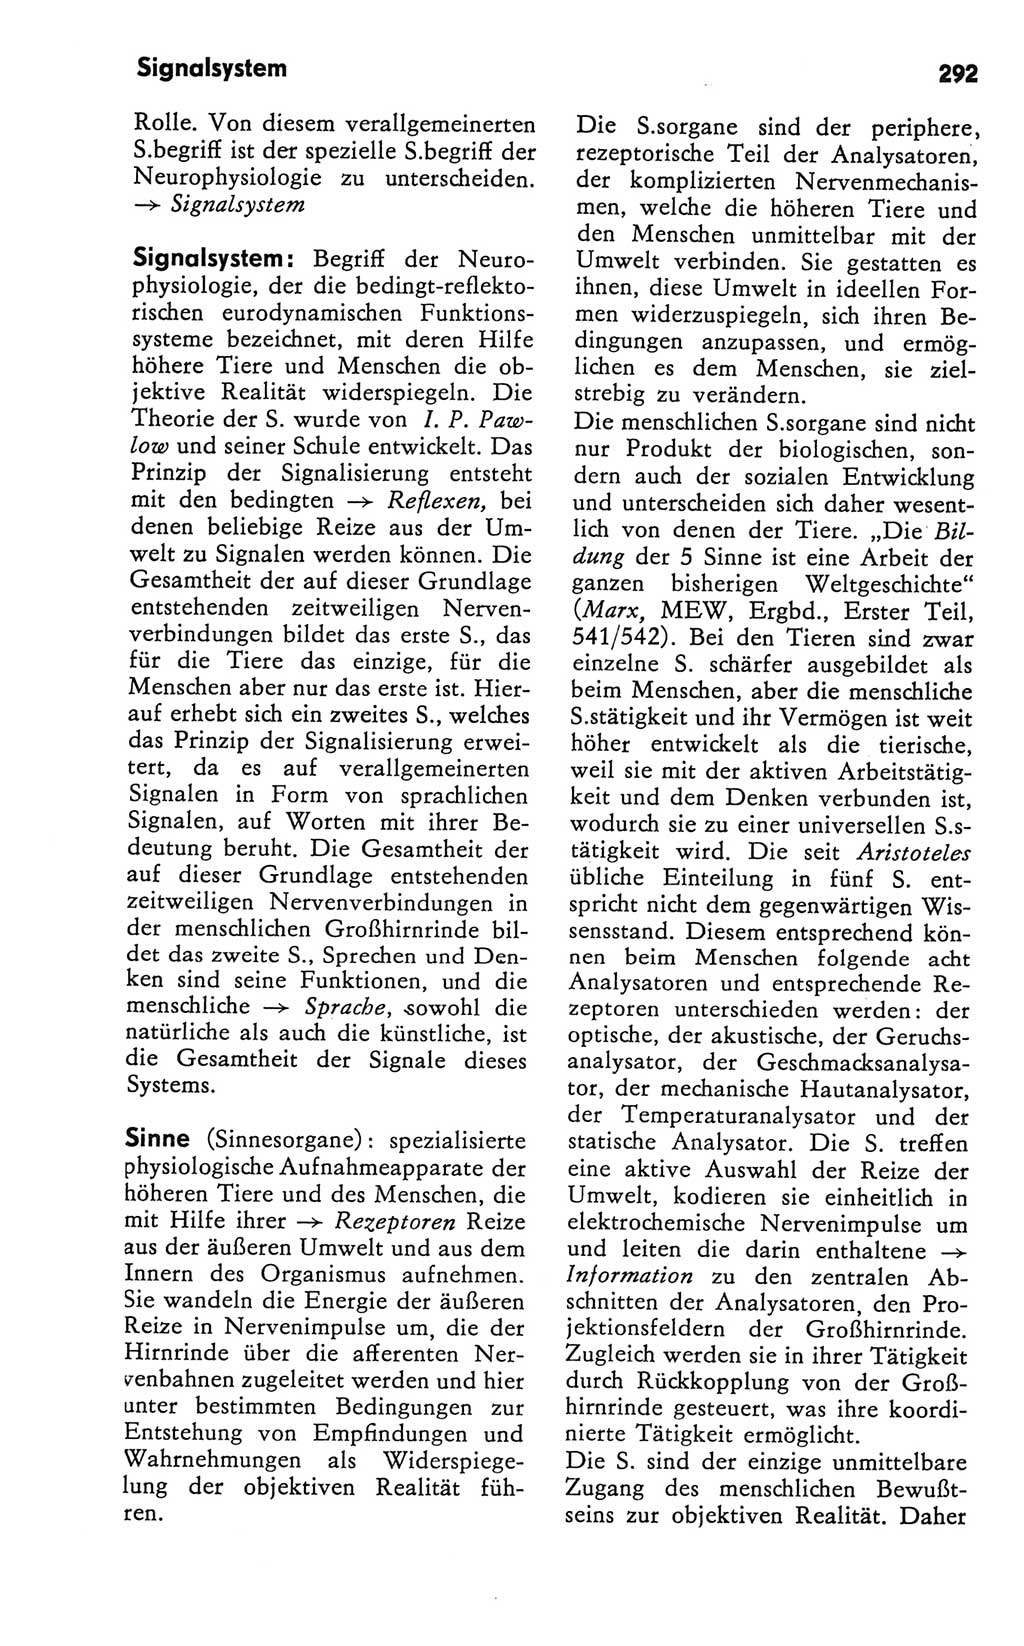 Kleines Wörterbuch der marxistisch-leninistischen Philosophie [Deutsche Demokratische Republik (DDR)] 1981, Seite 292 (Kl. Wb. ML Phil. DDR 1981, S. 292)